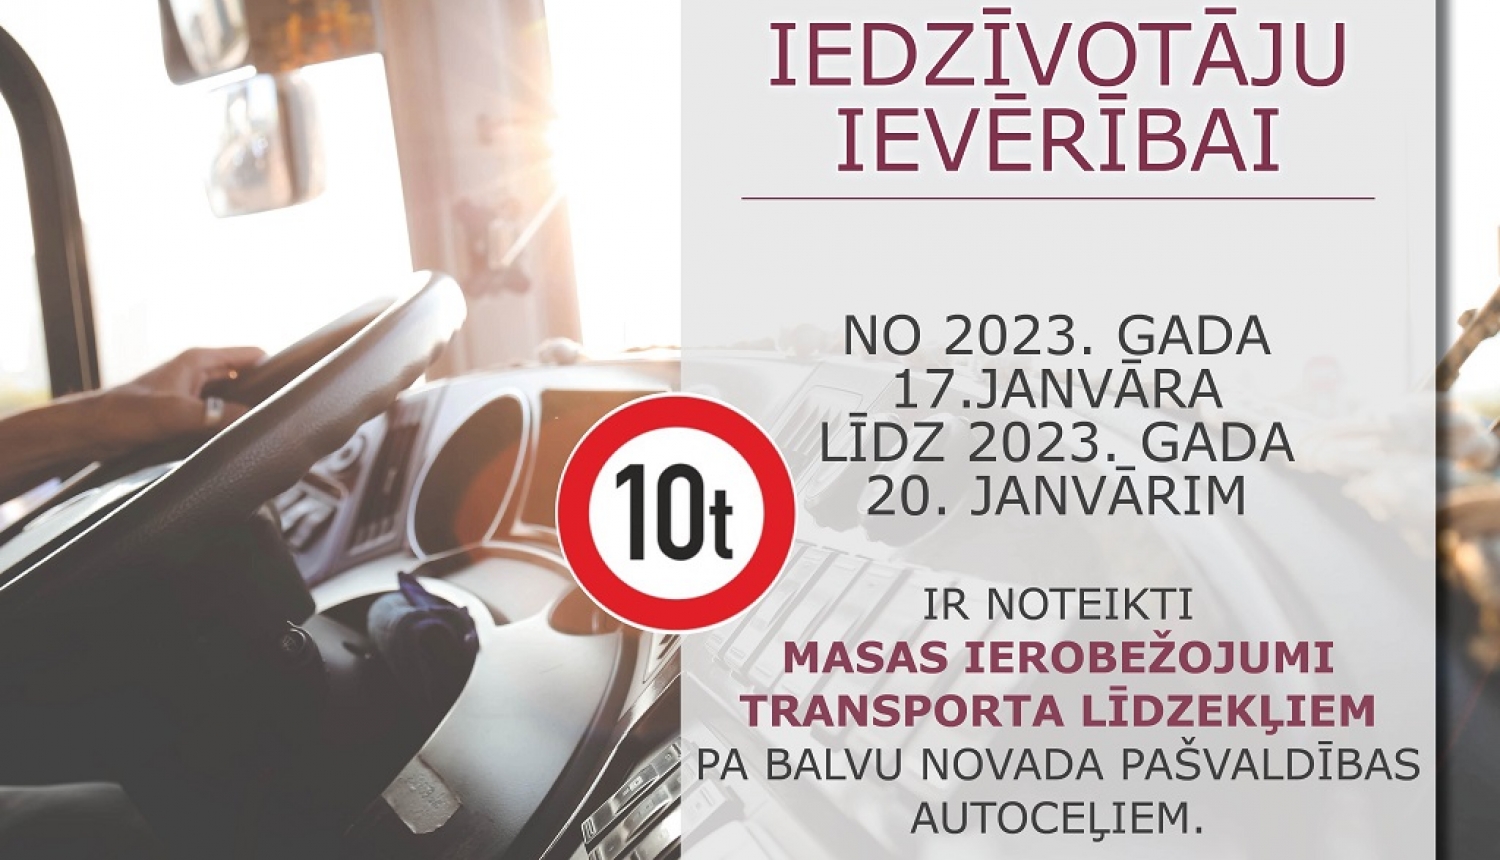 Par transportlīdzekļu satiksmes ierobežošanu uz Balvu novada pašvaldības autoceļiem